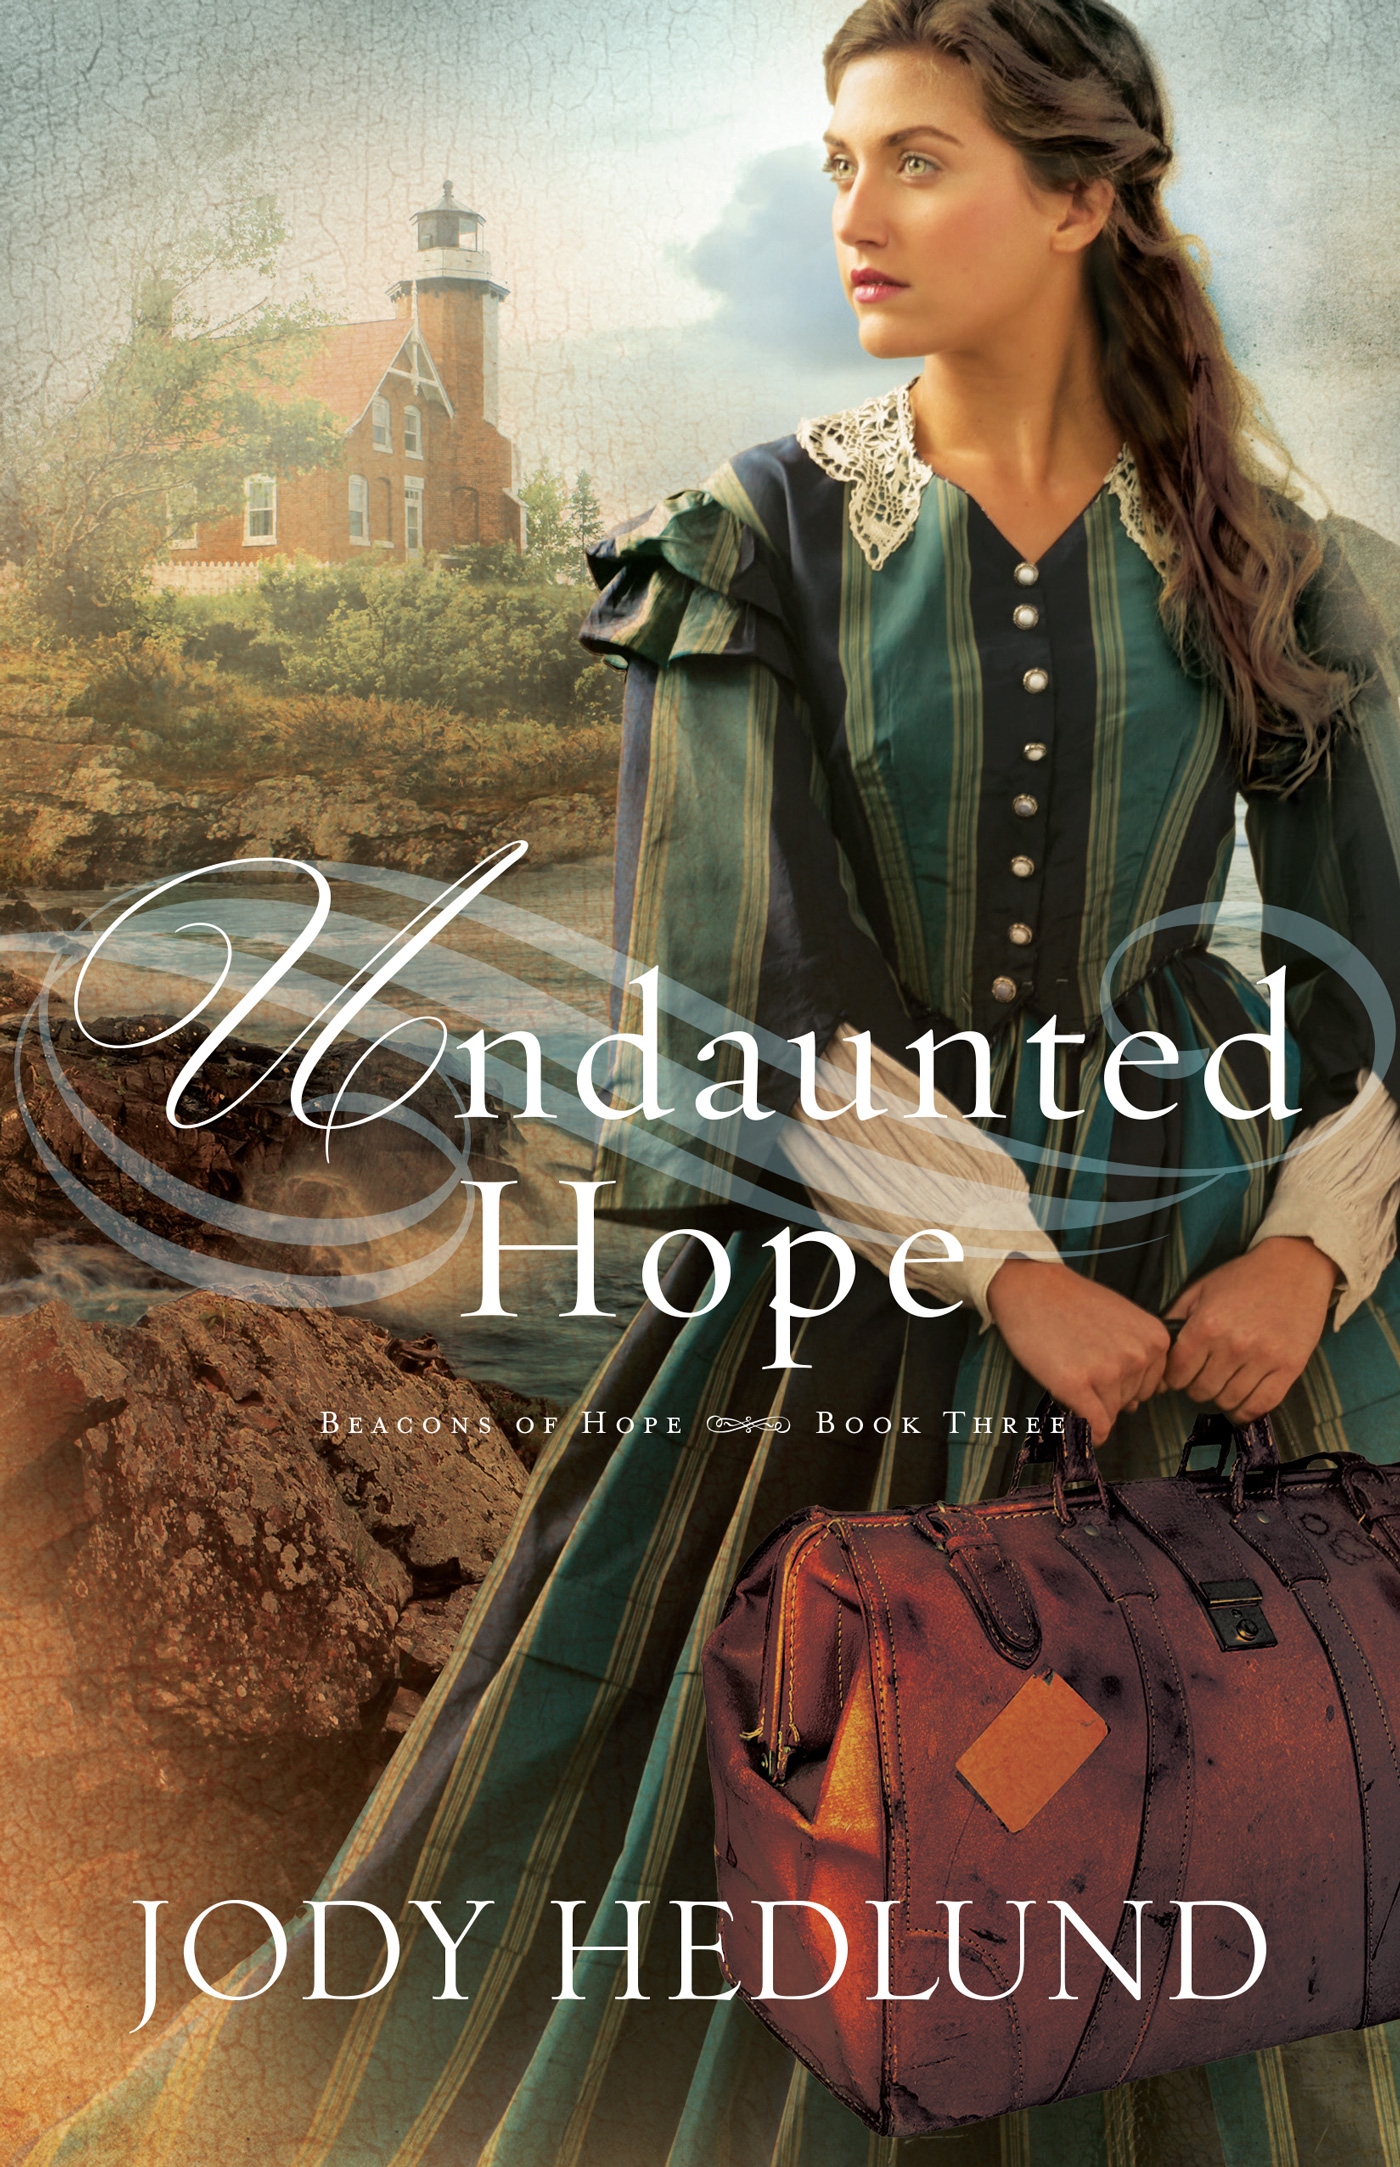 Undaunted Hope (2015) by Jody Hedlund